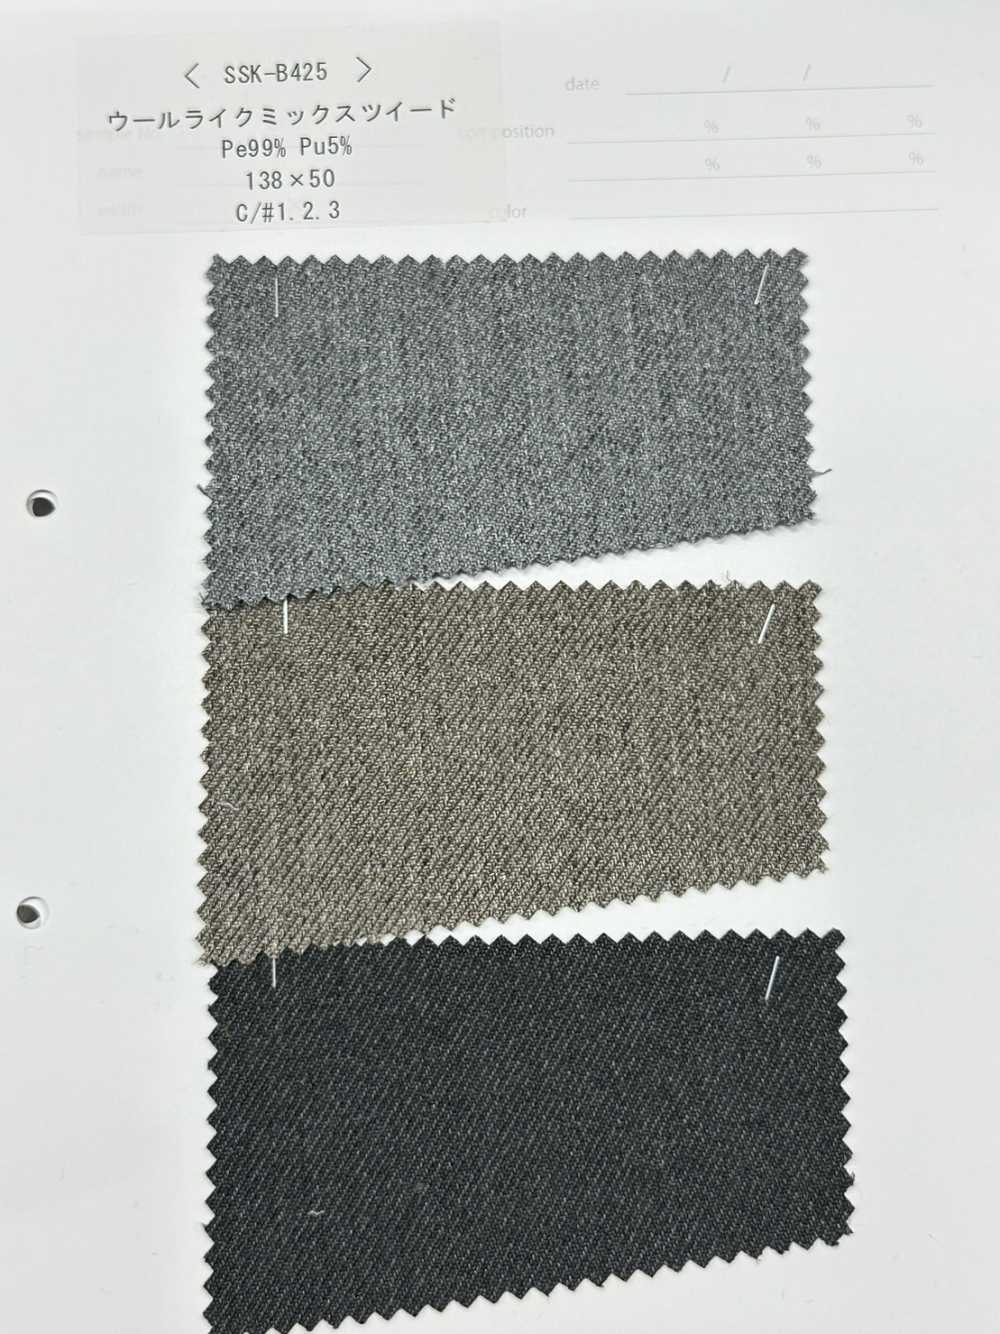 SSK-B425 Tweed Mélangé Imitation Laine[Fabrication De Textile] SASAKISELLM